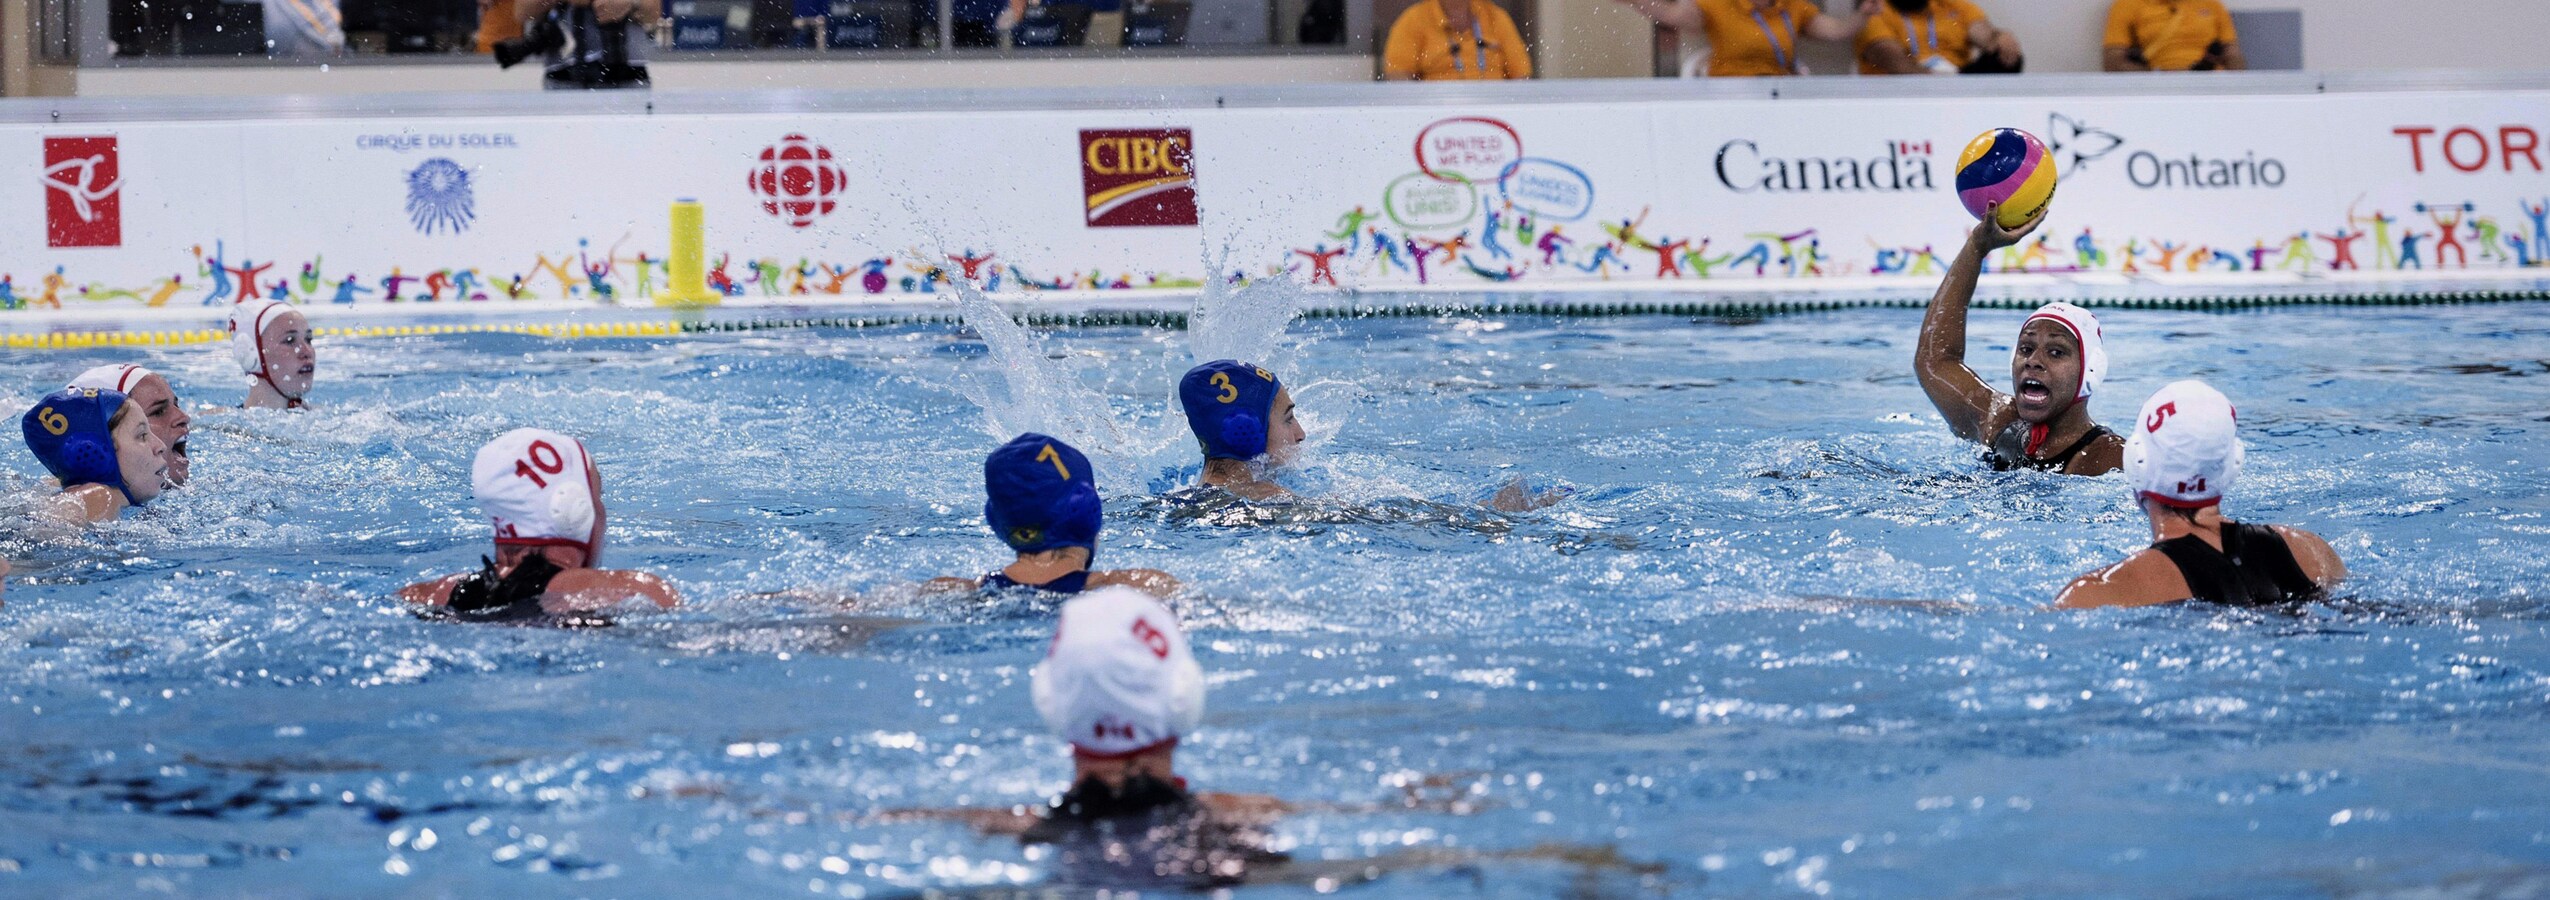 Une joueuse de water-polo tient le ballon haut dans les airs et regarde d'autres joueuses qui nagent sur place.